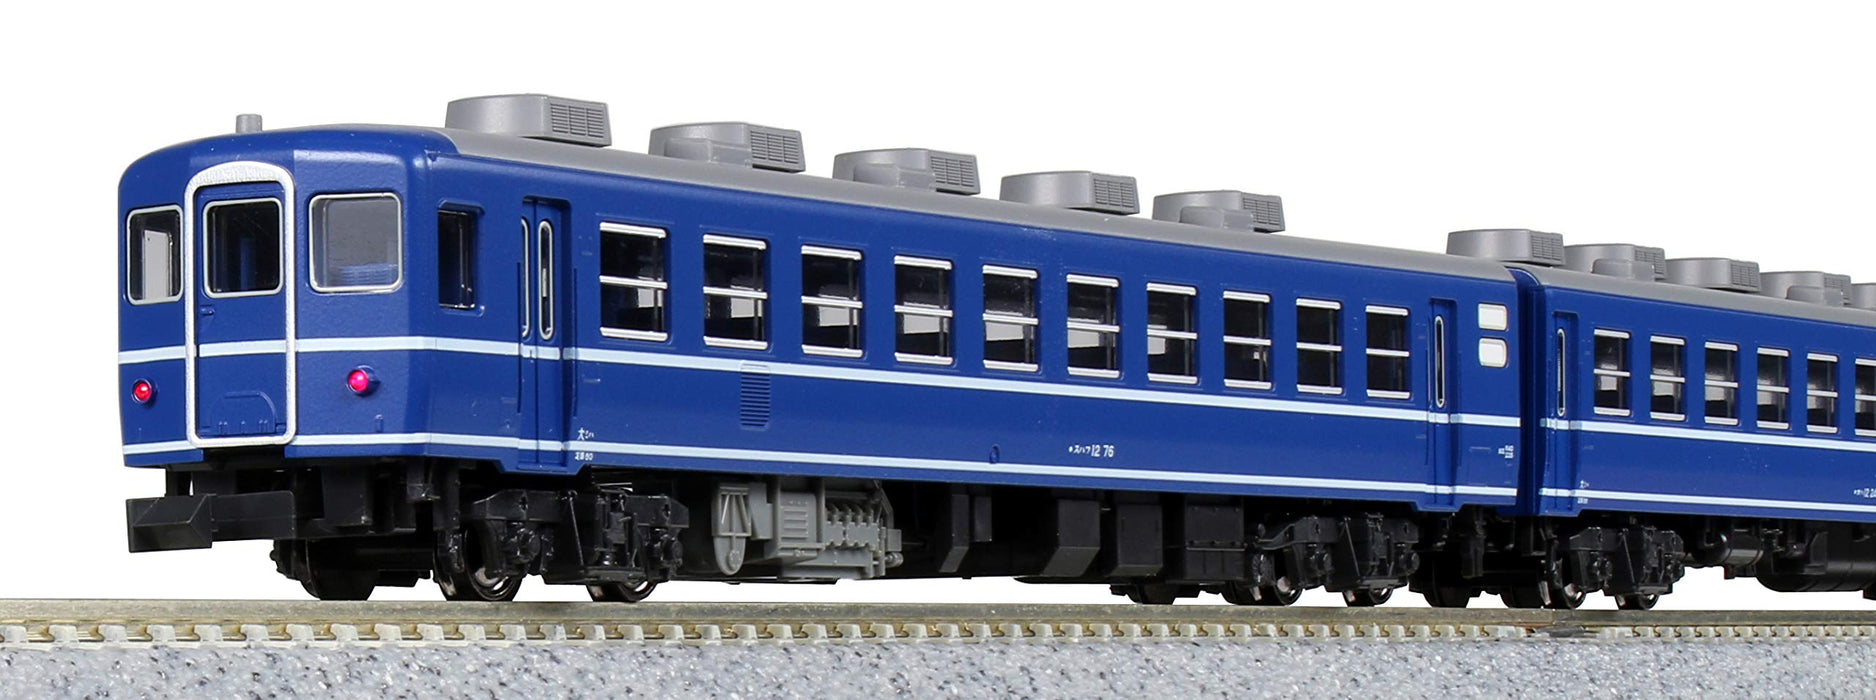 Kato Spur N Serie 12 6-Wagen-Express-Personenzugset, JNR-Spezifikation, Eisenbahnmodell 10-1550